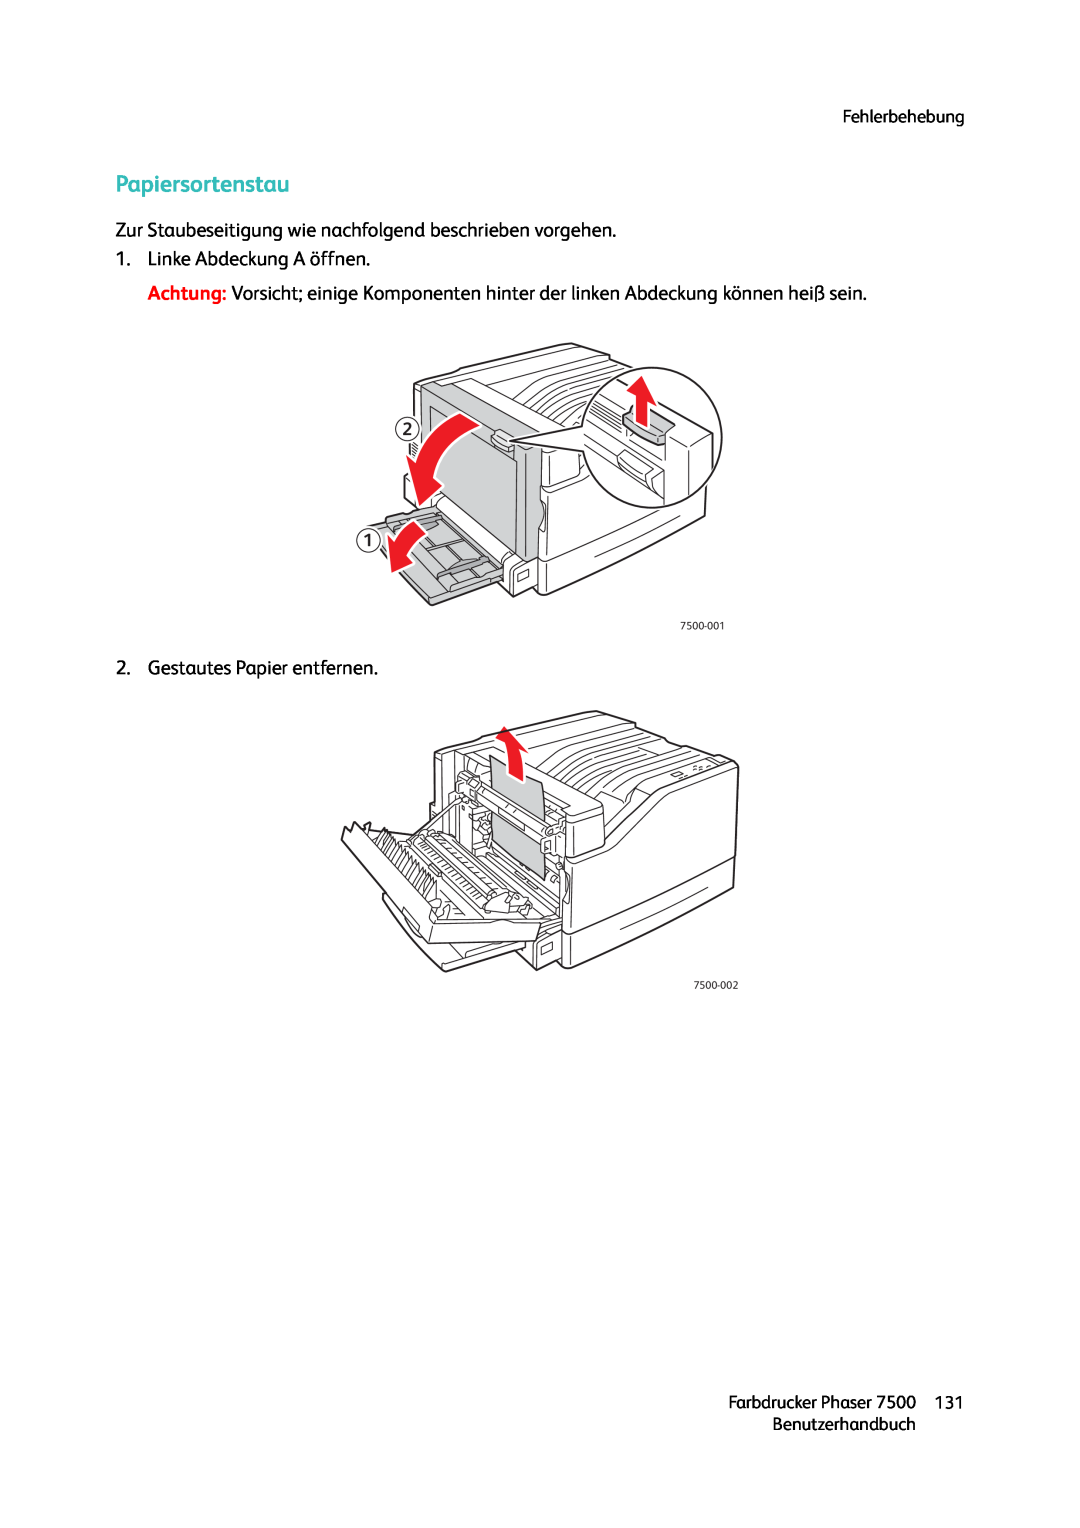 Xerox 7500 color printer manual Papiersortenstau, Fehlerbehebung, Benutzerhandbuch, 7500-001, 7500-002 